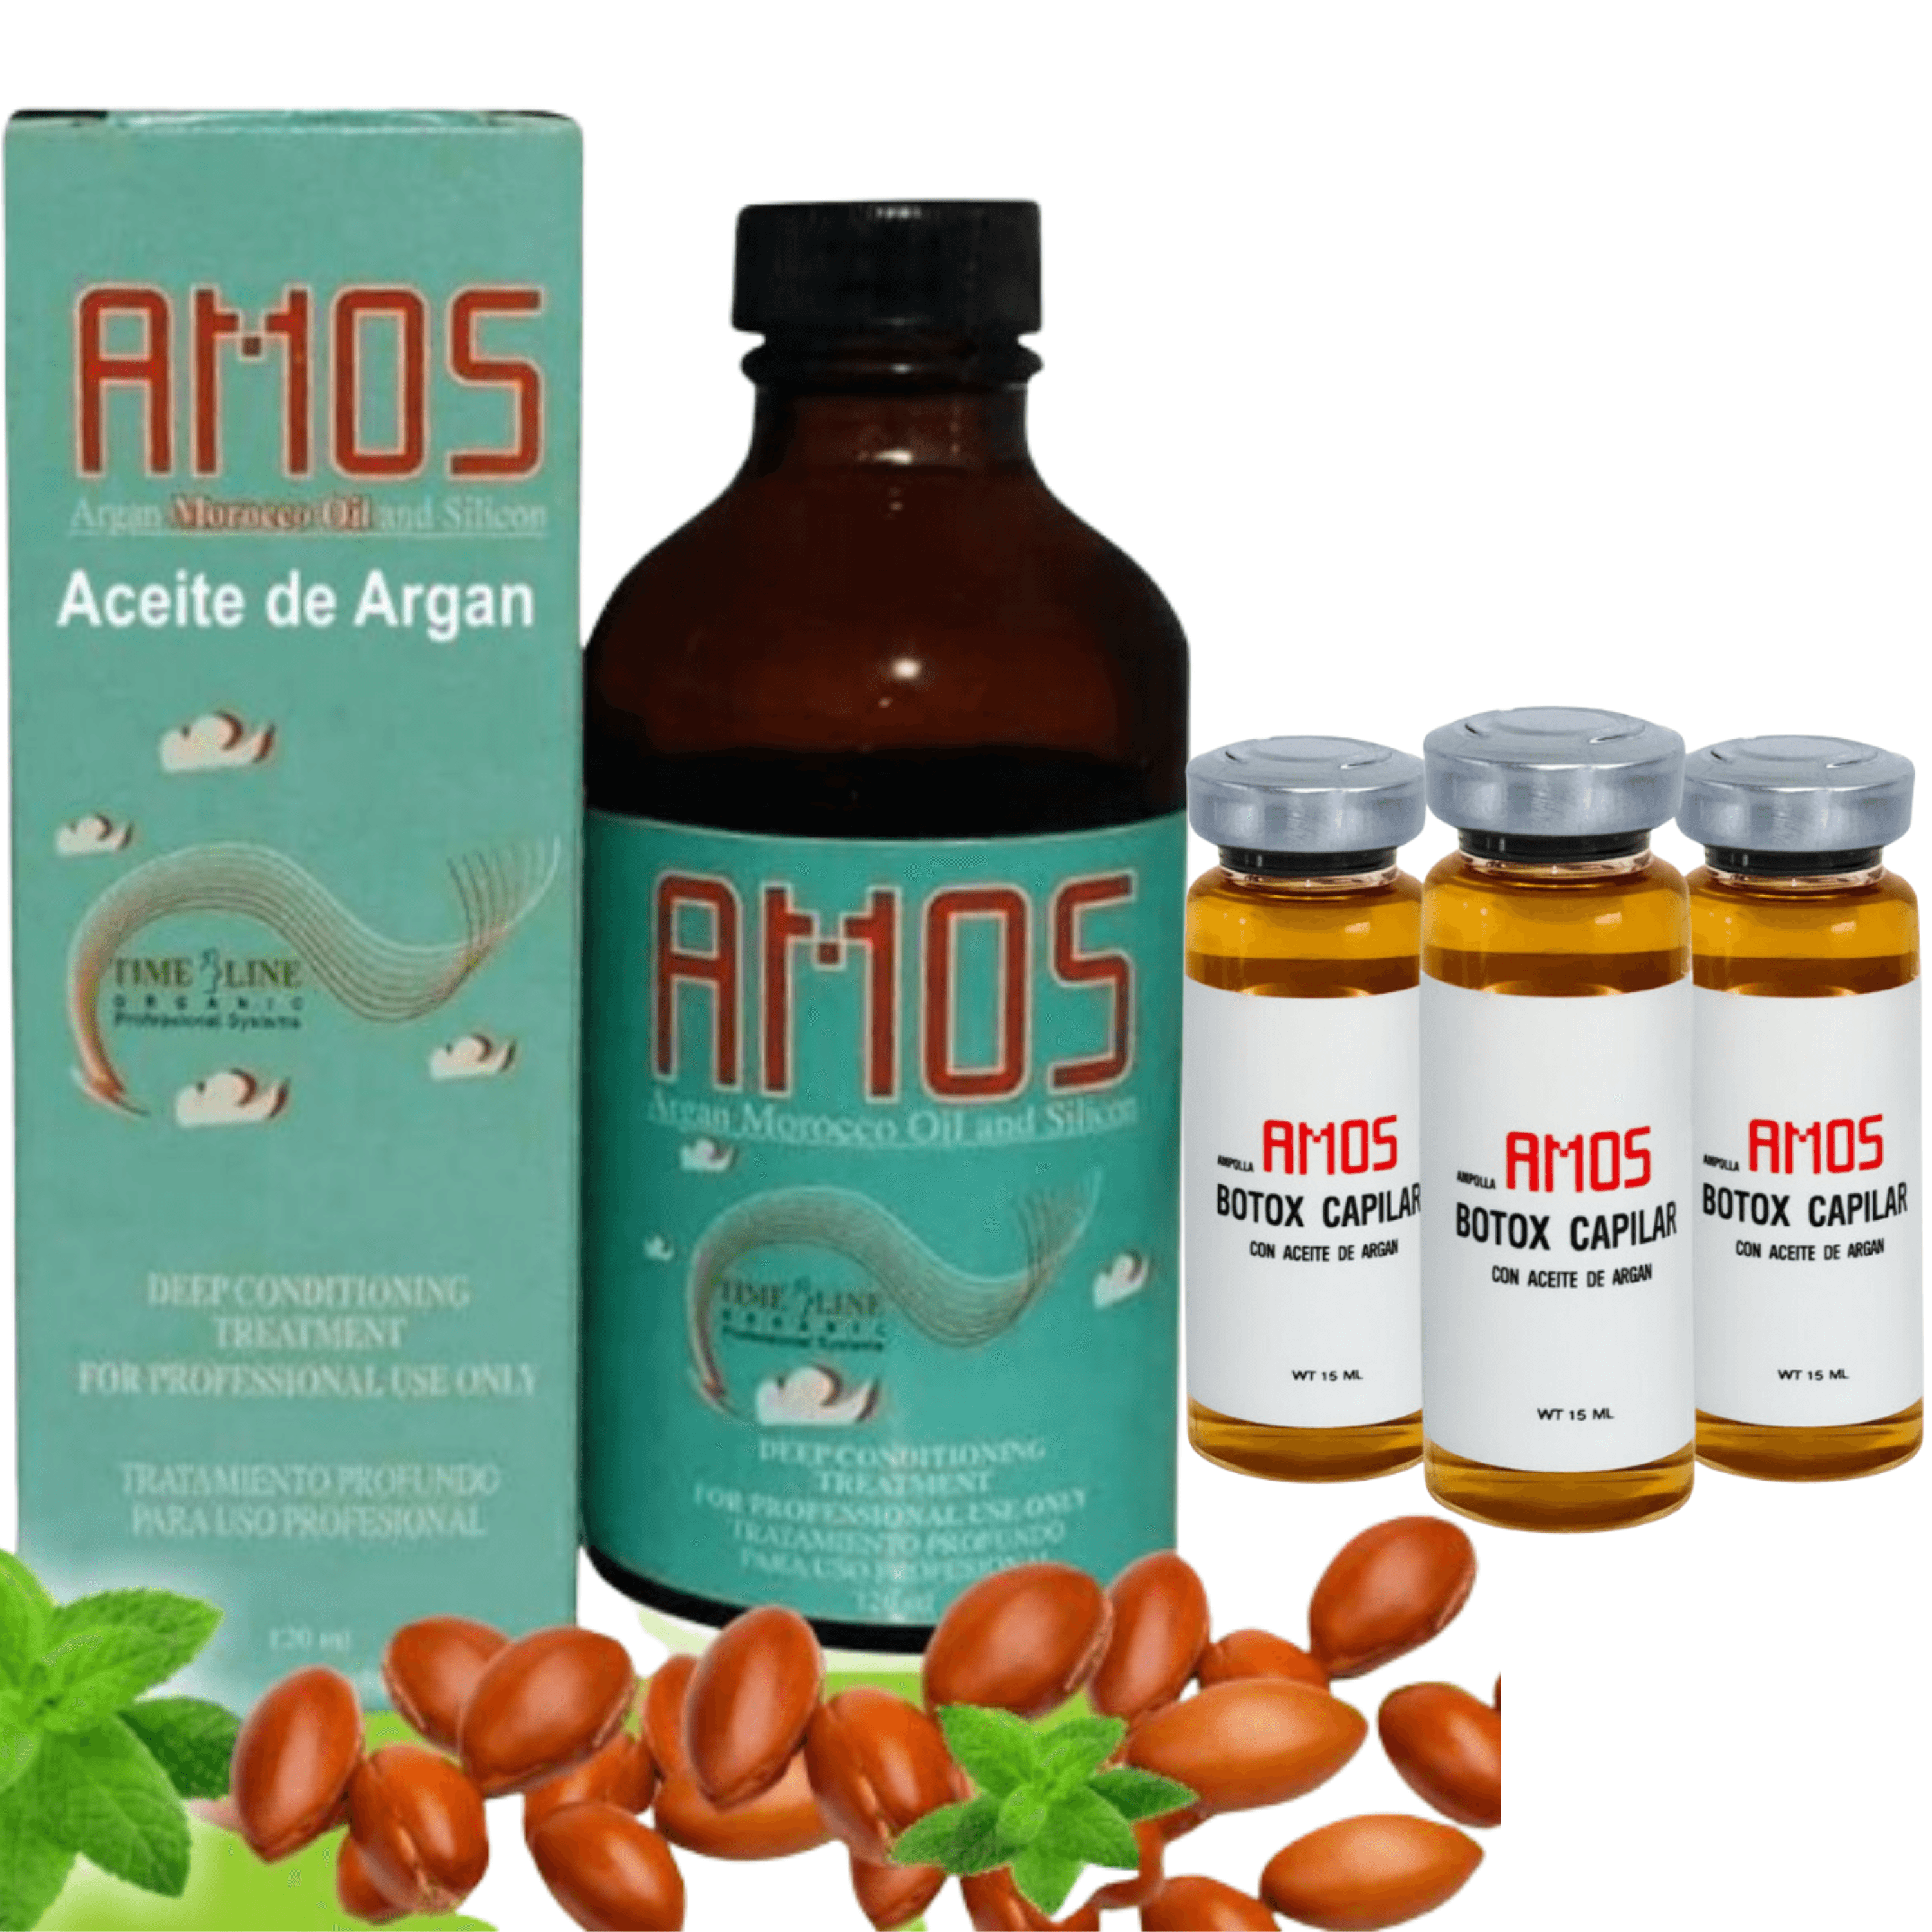 Argan Oil 120 ml + 3 Ampollas 15 ml Botox Capilar - AMOSTIMELINE